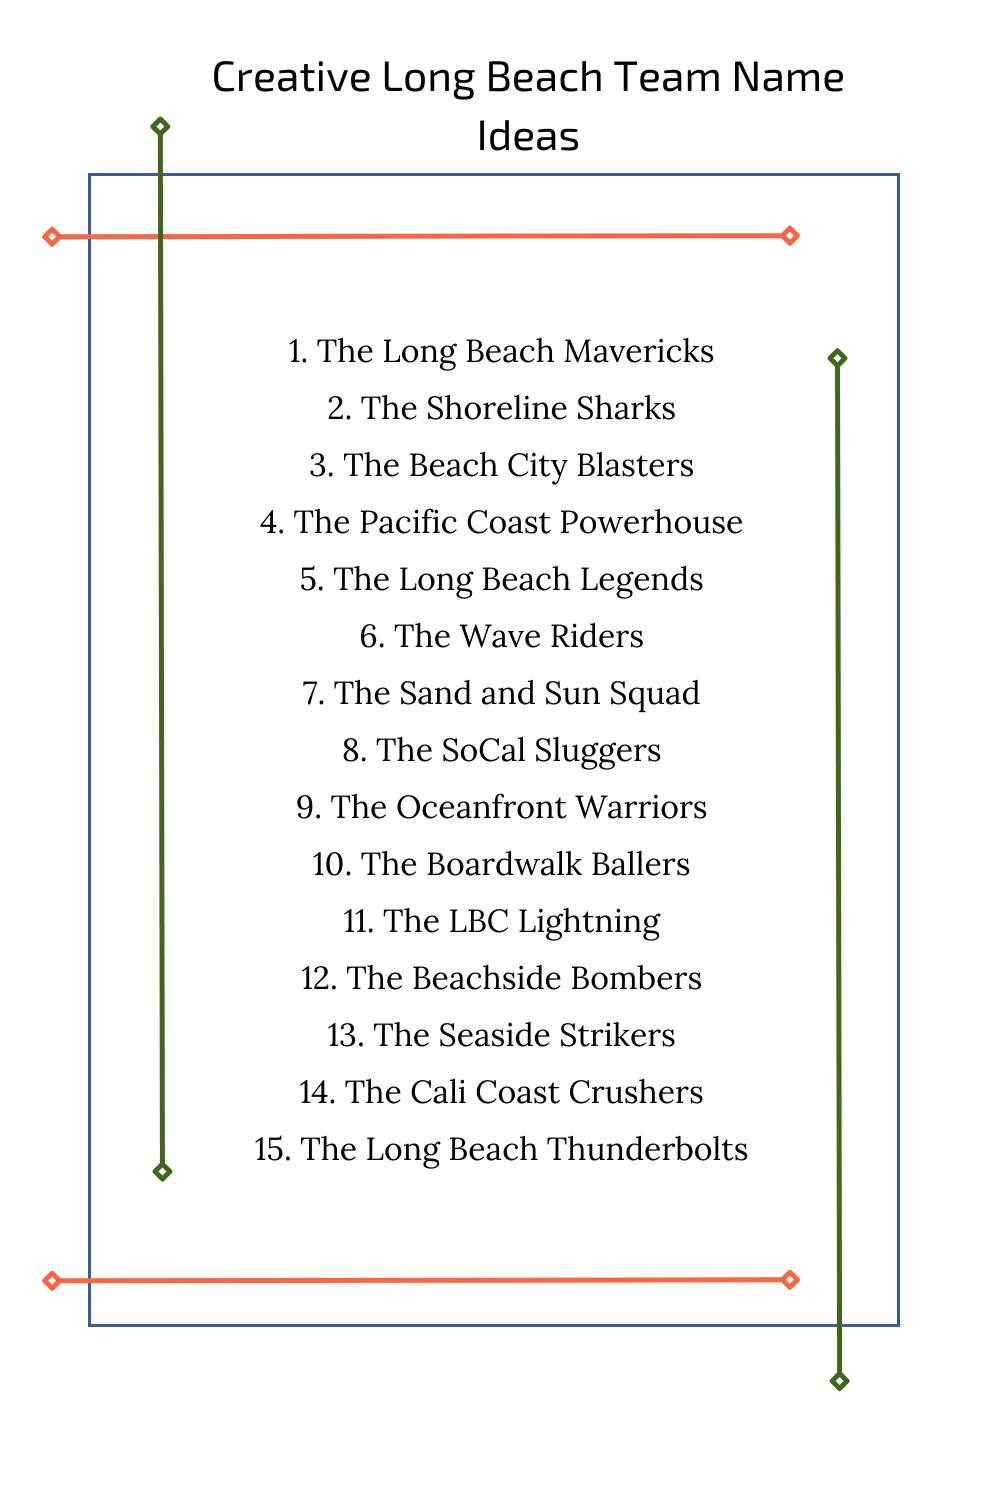 Creative Long Beach Team Name Ideas